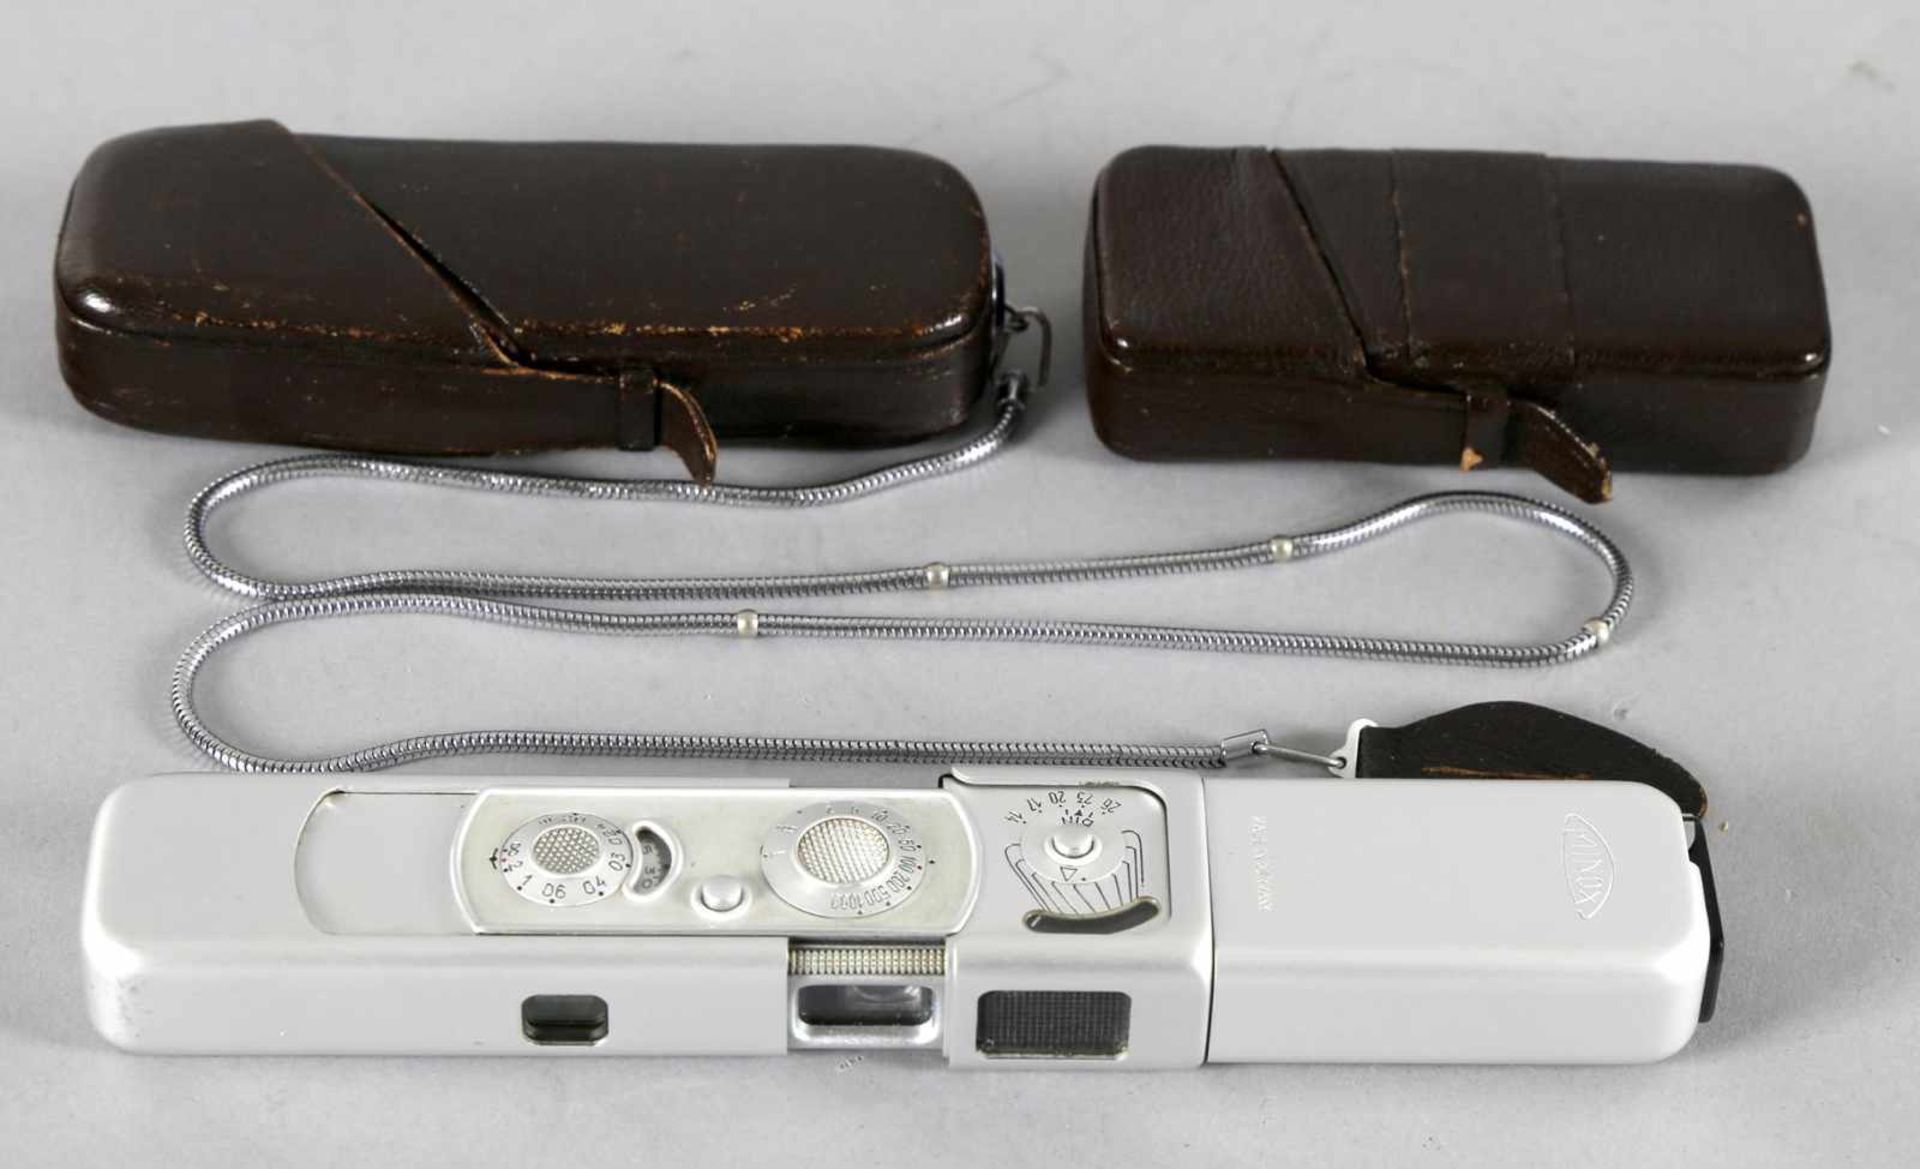 Kleinbildkamera Minox Complan 1 : 3,5, f = 15 mm mit Aufsteckblitz, 2. H. 20. Jh.beide im braunen